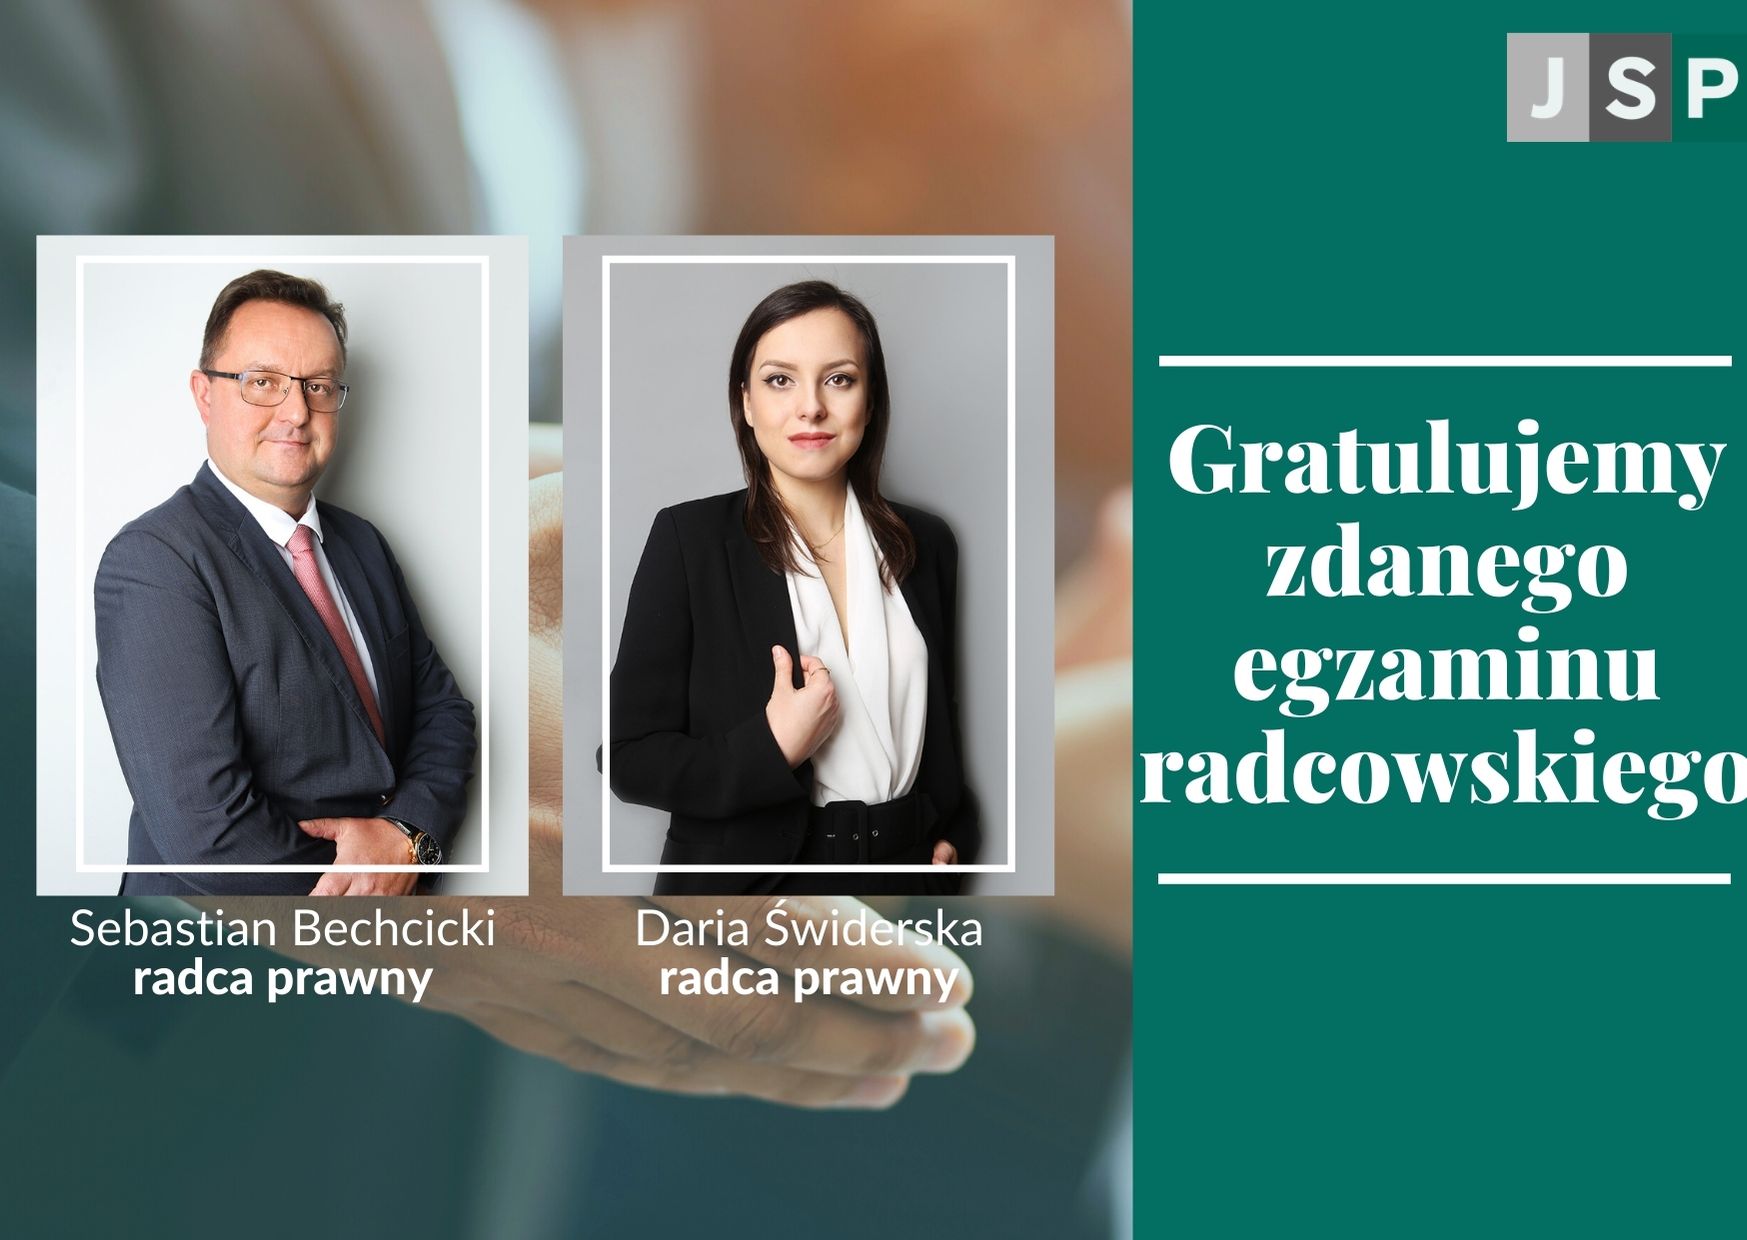 Gratulujemy zdanego egzaminu radcowskiego! Daria Świderska i Sebastian Bechcicki